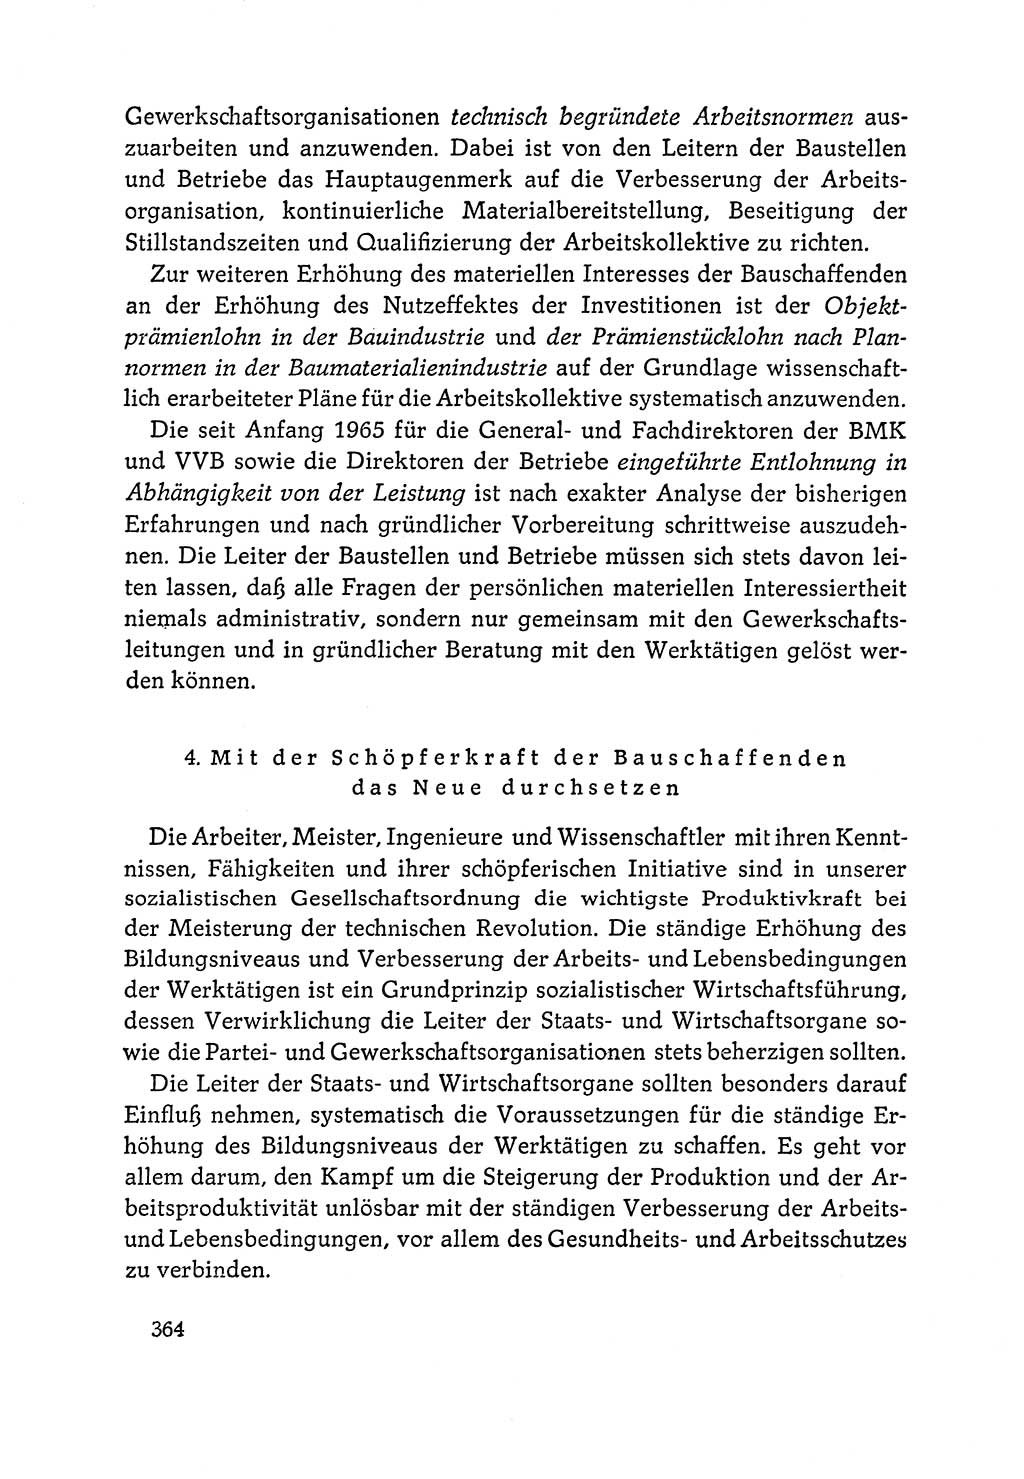 Dokumente der Sozialistischen Einheitspartei Deutschlands (SED) [Deutsche Demokratische Republik (DDR)] 1964-1965, Seite 364 (Dok. SED DDR 1964-1965, S. 364)